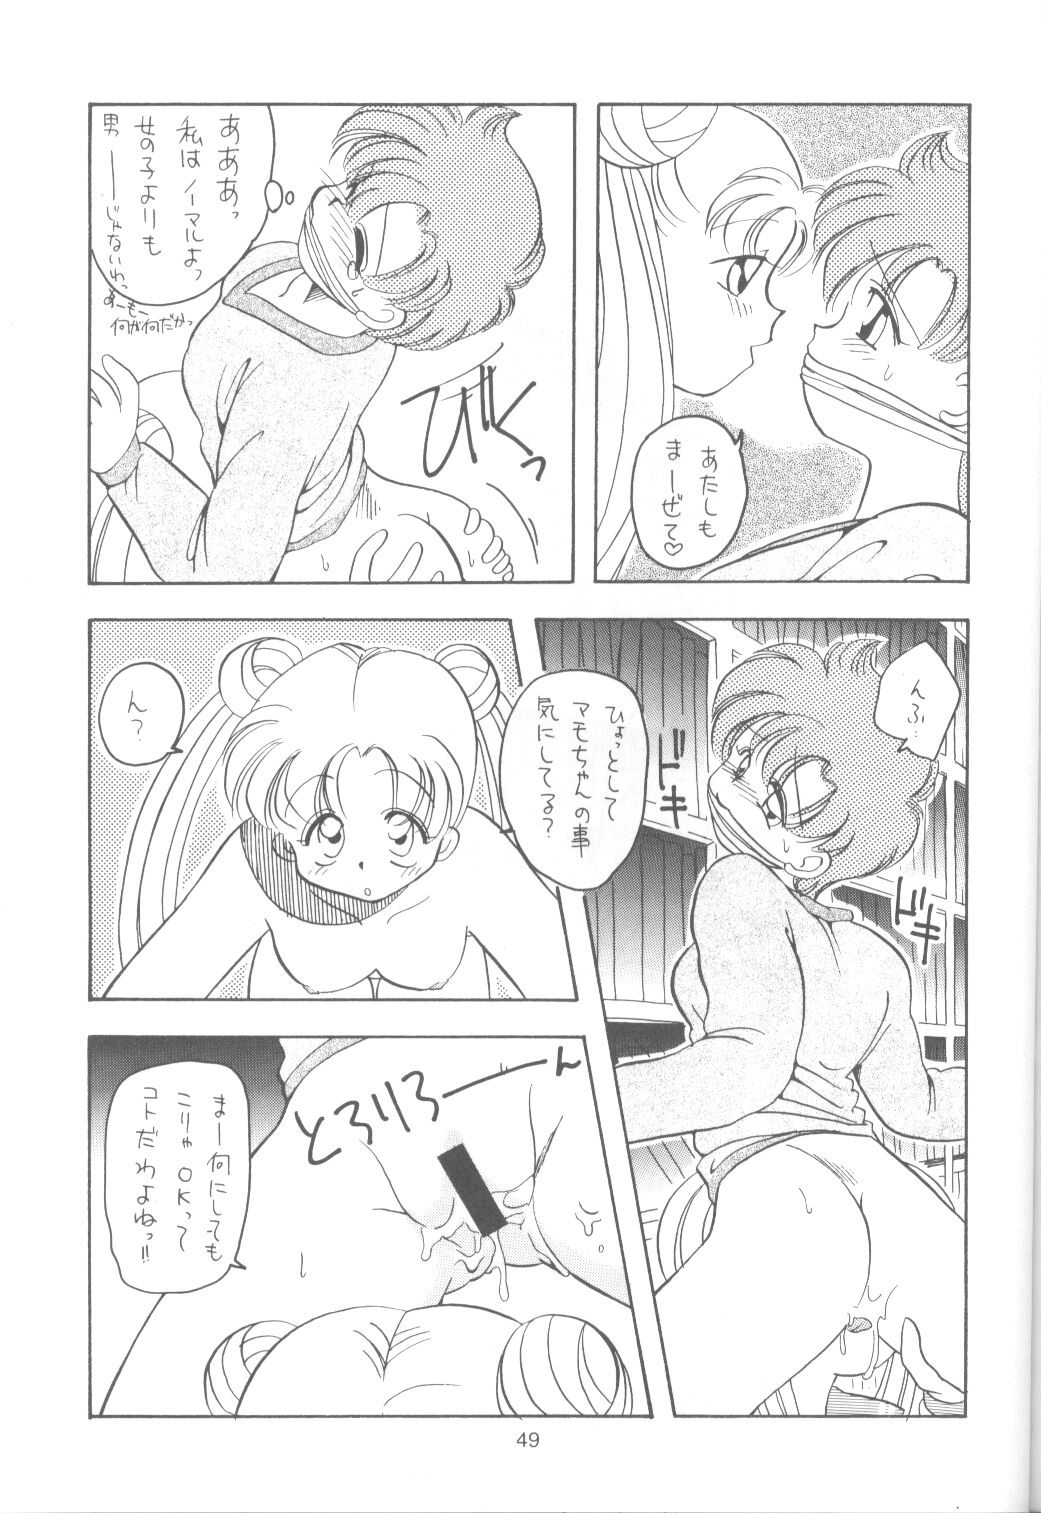 [Paradise City] Tabeta Kigasuru 9 (Sailor Moon) page 48 full